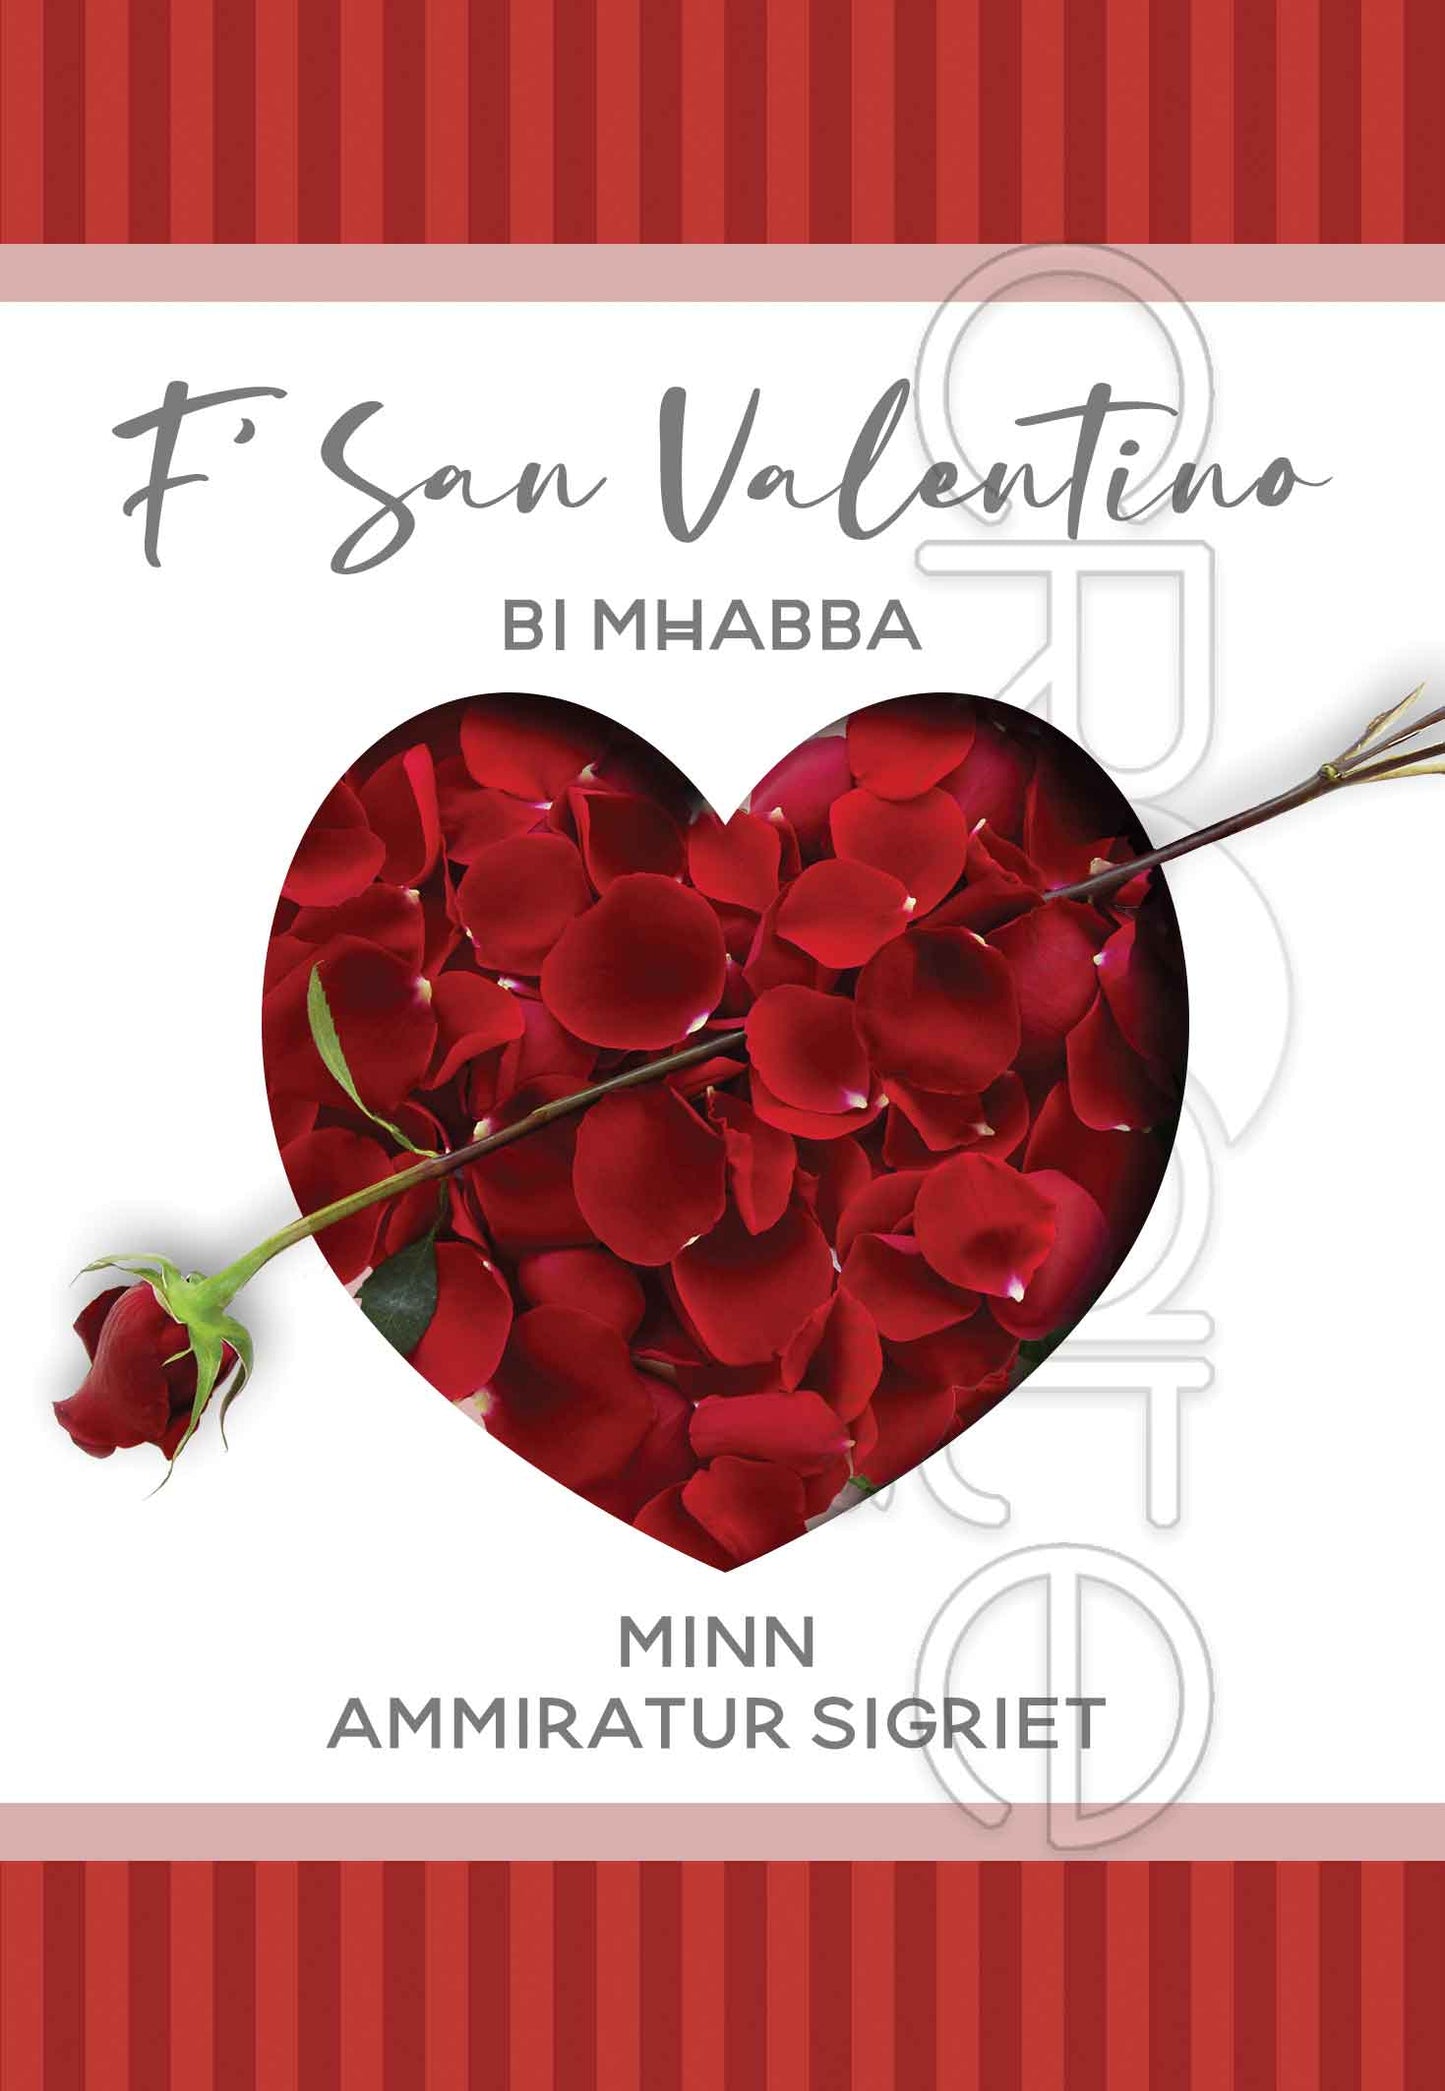 Kartolina għal San Valentino minn ammiratur sigriet